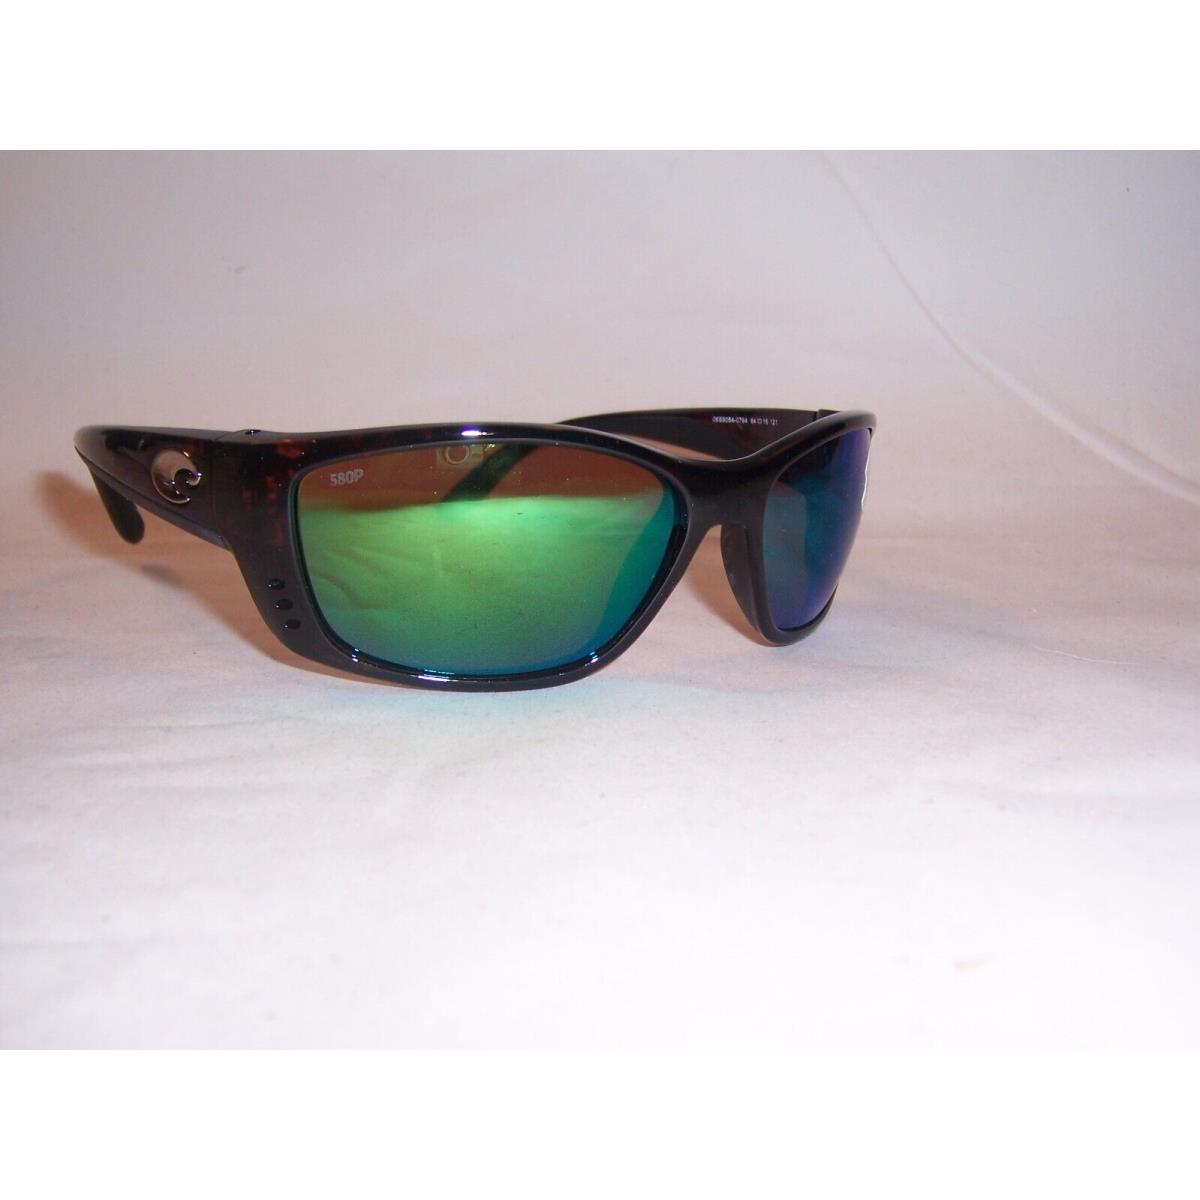 Costa Del Mar Fisch Sunglasses Tortoise/green Mirror 580P Polarized